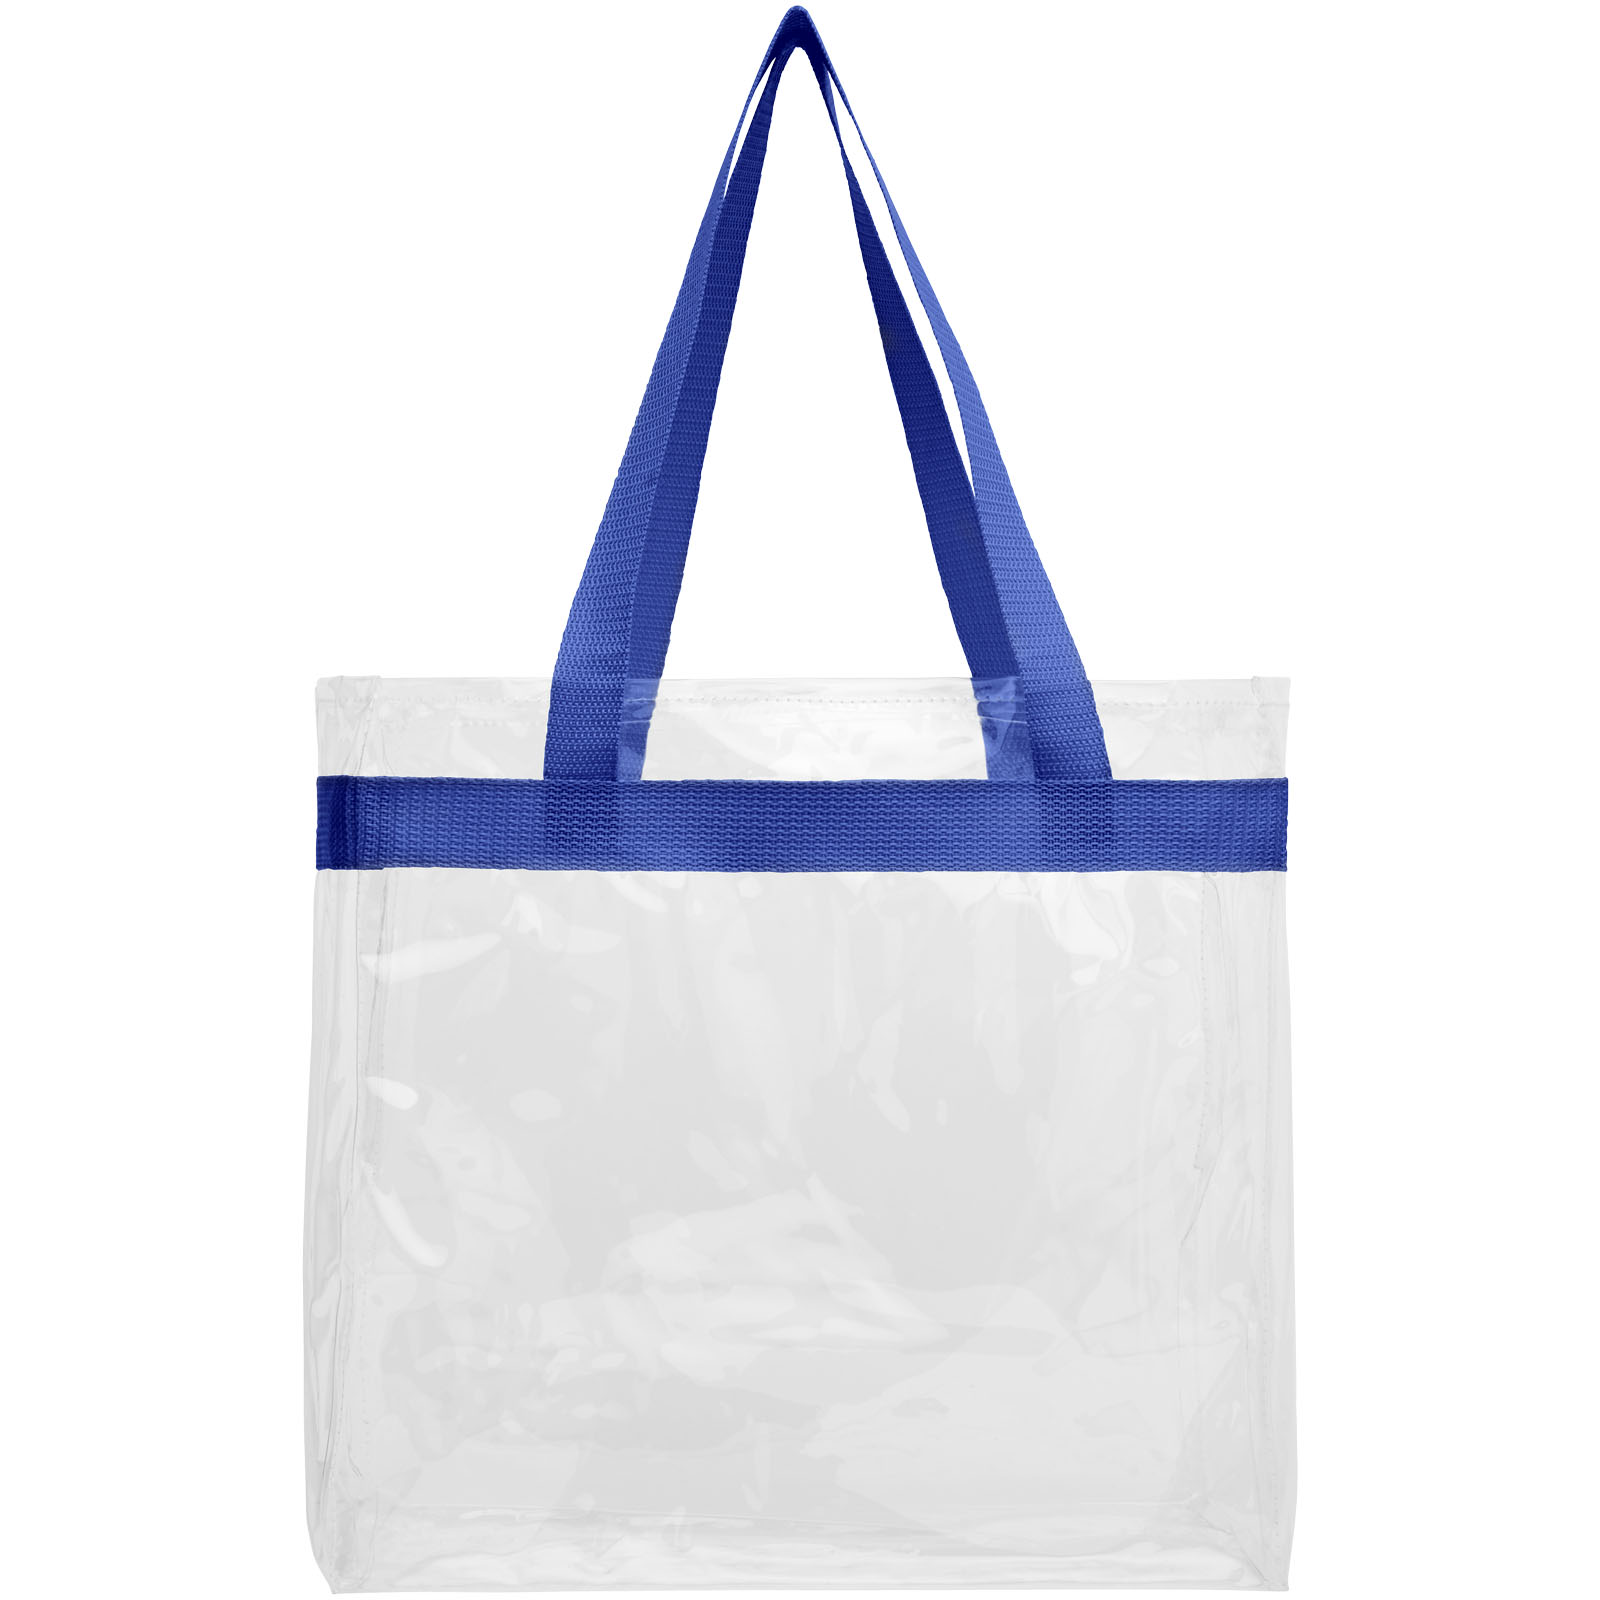 Advertising Shopping & Tote Bags - Hampton transparent tote bag 13L - 1